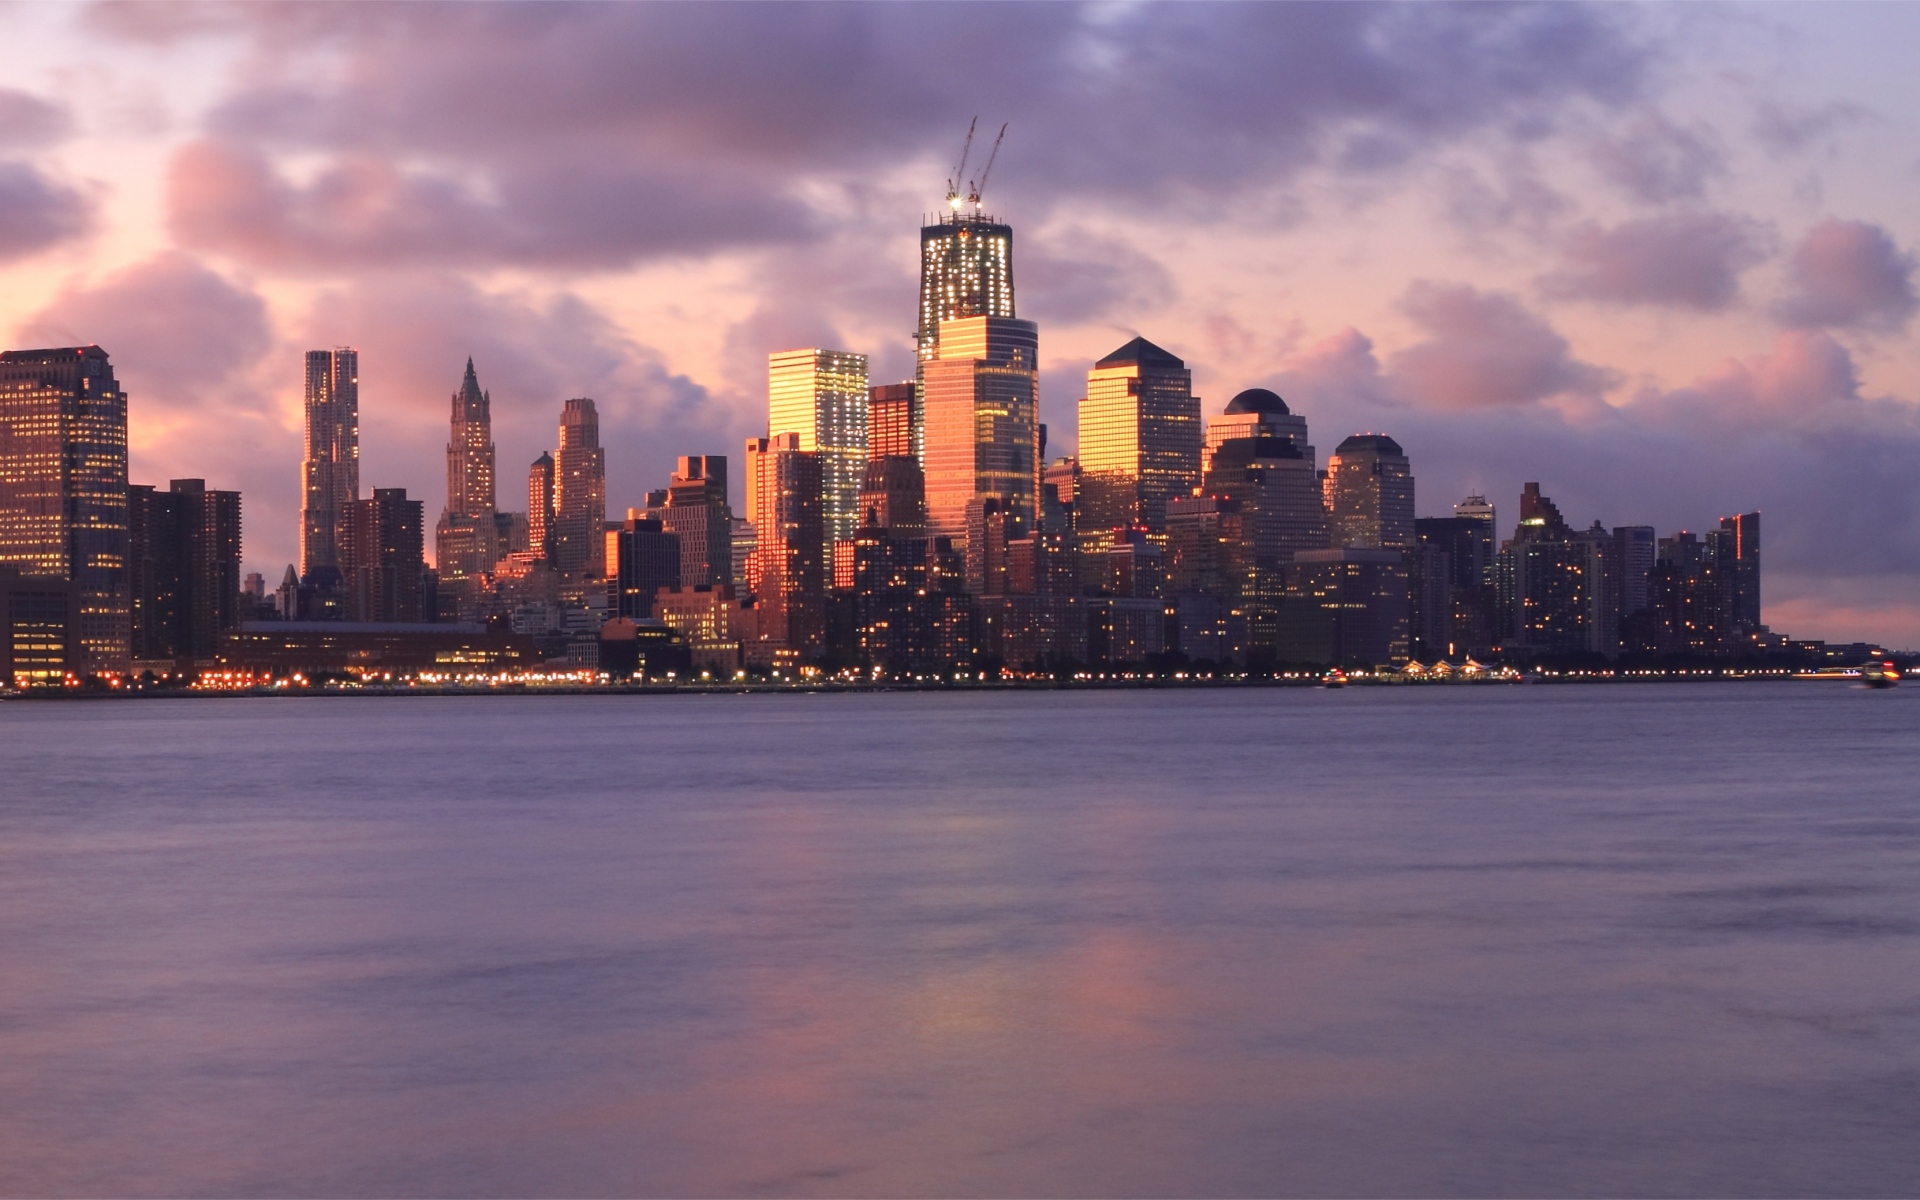 Картинки США, Нью-Йорк, мегаполис, здания, небоскребы, огни, река, ночь, розовый, закат, небо, облака фото и обои на рабочий стол